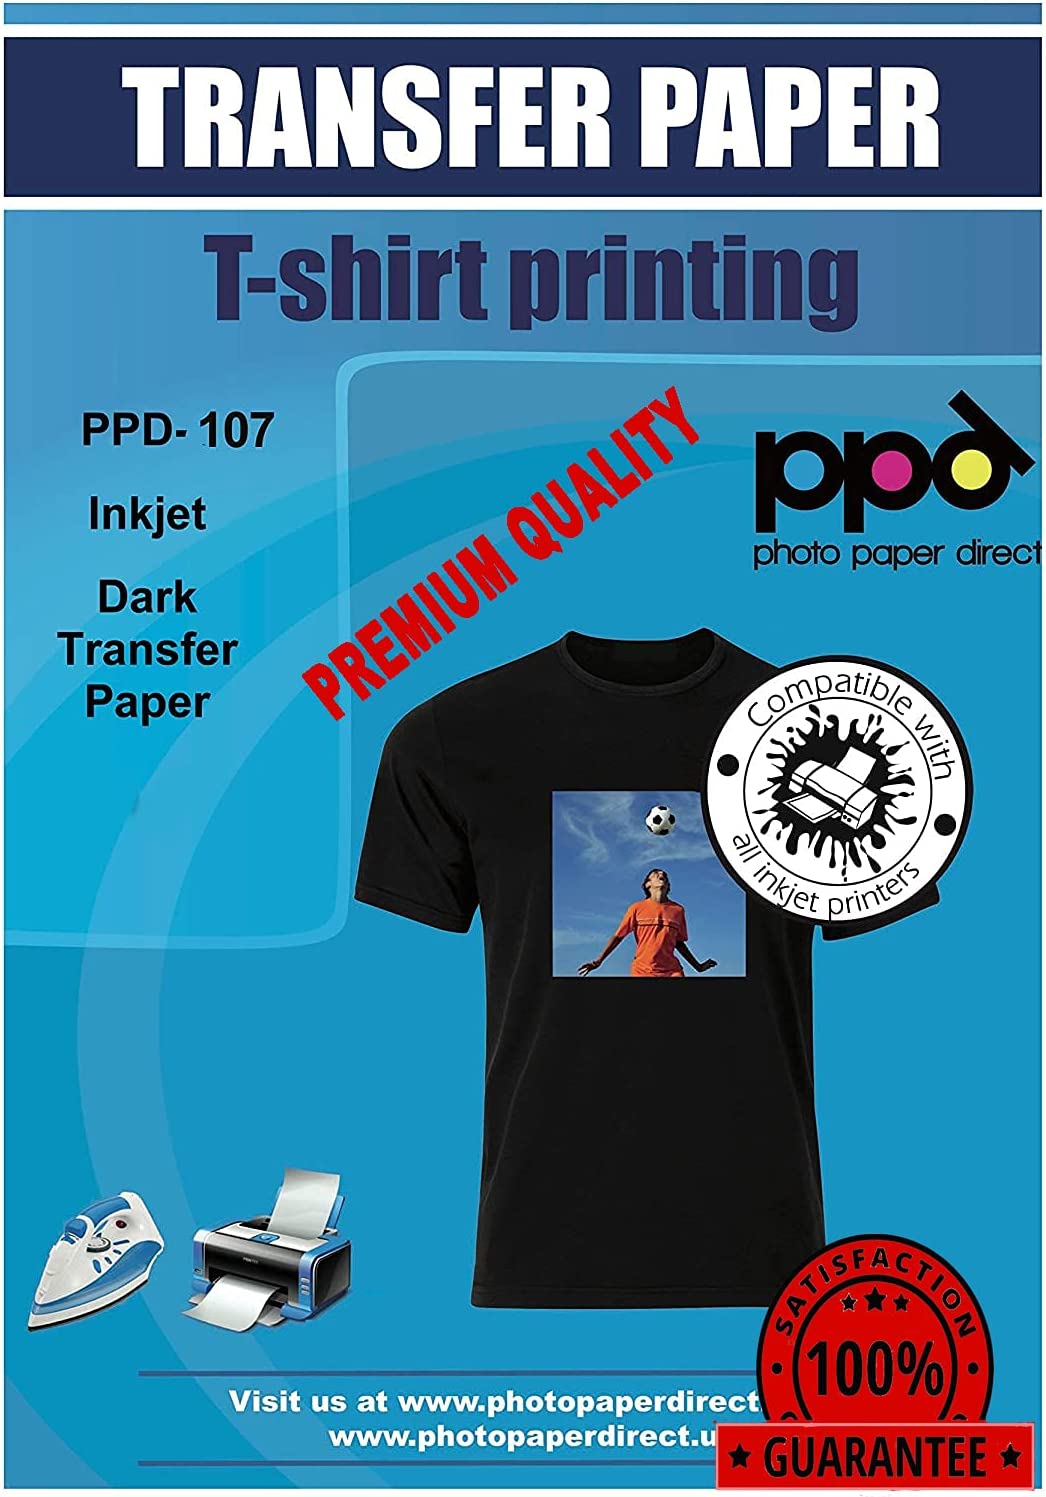 PPD Inkjet Transfer Paper A3 PPD-107 PhotoPaperDirect